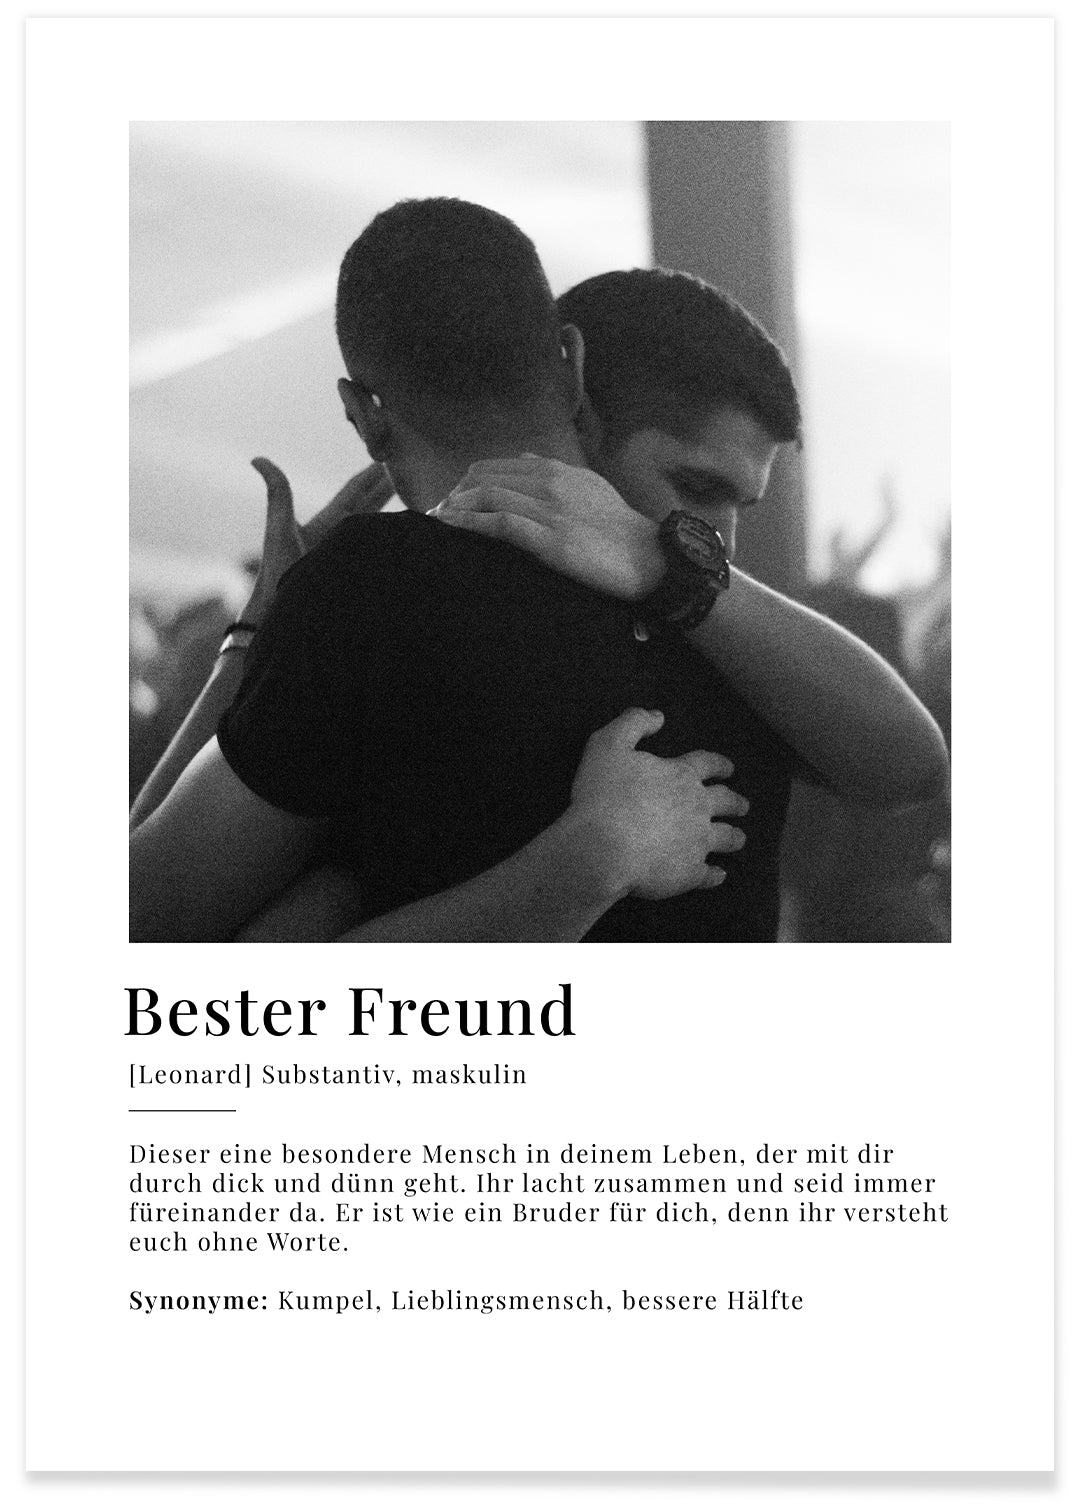 Fotoposter "Bester Freund Definition"